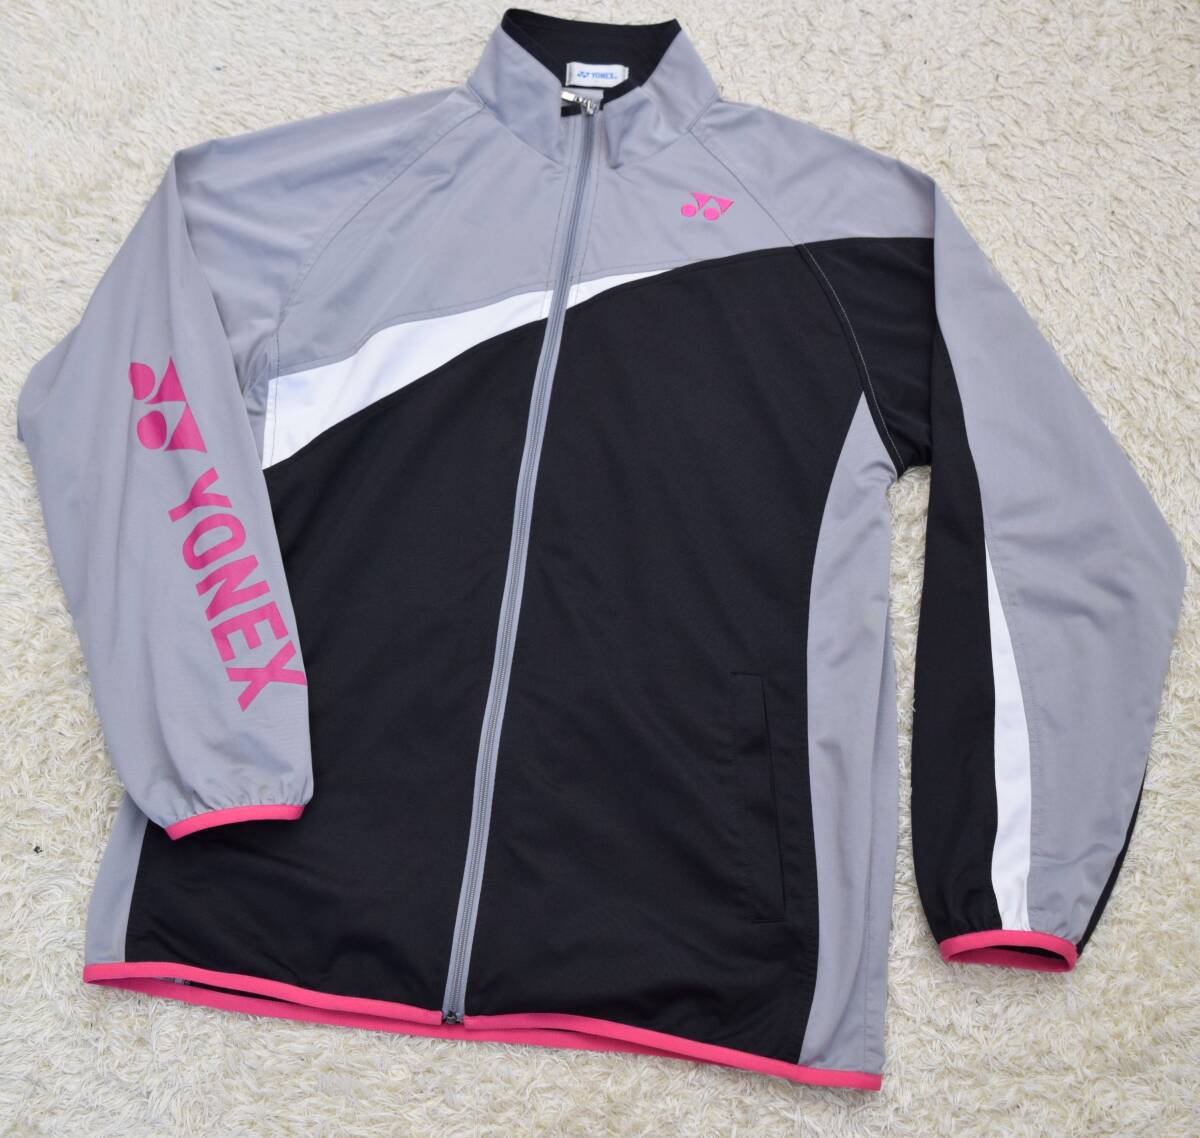 YONEX Yonex sleeve Logo jersey jacket size L tennis badminton 